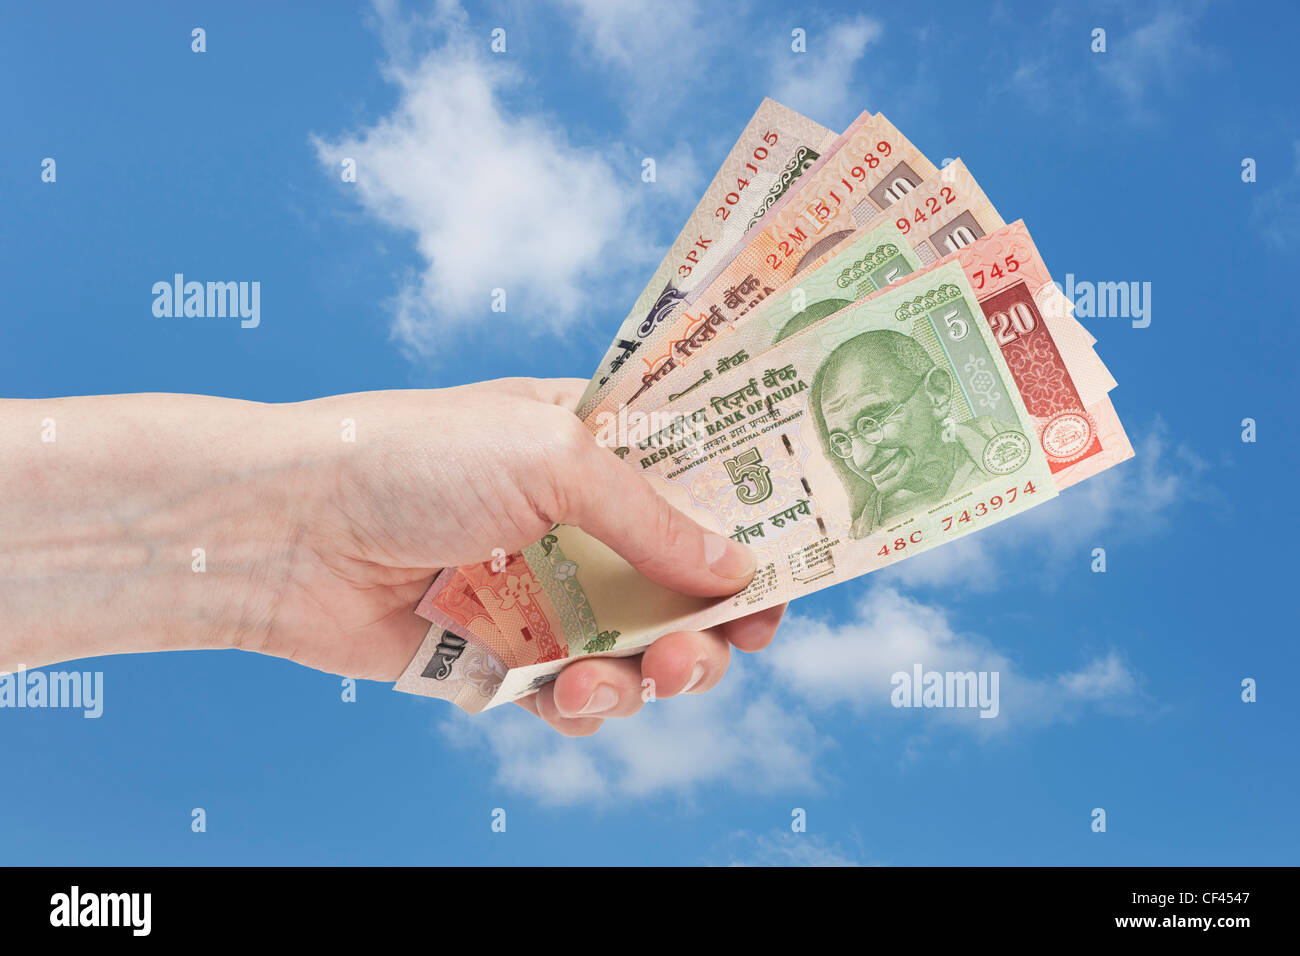 Molti diversi rupia indiana fatture con il ritratto del Mahatma Gandhi sono tenute in mano. Il cielo è in background. Foto Stock